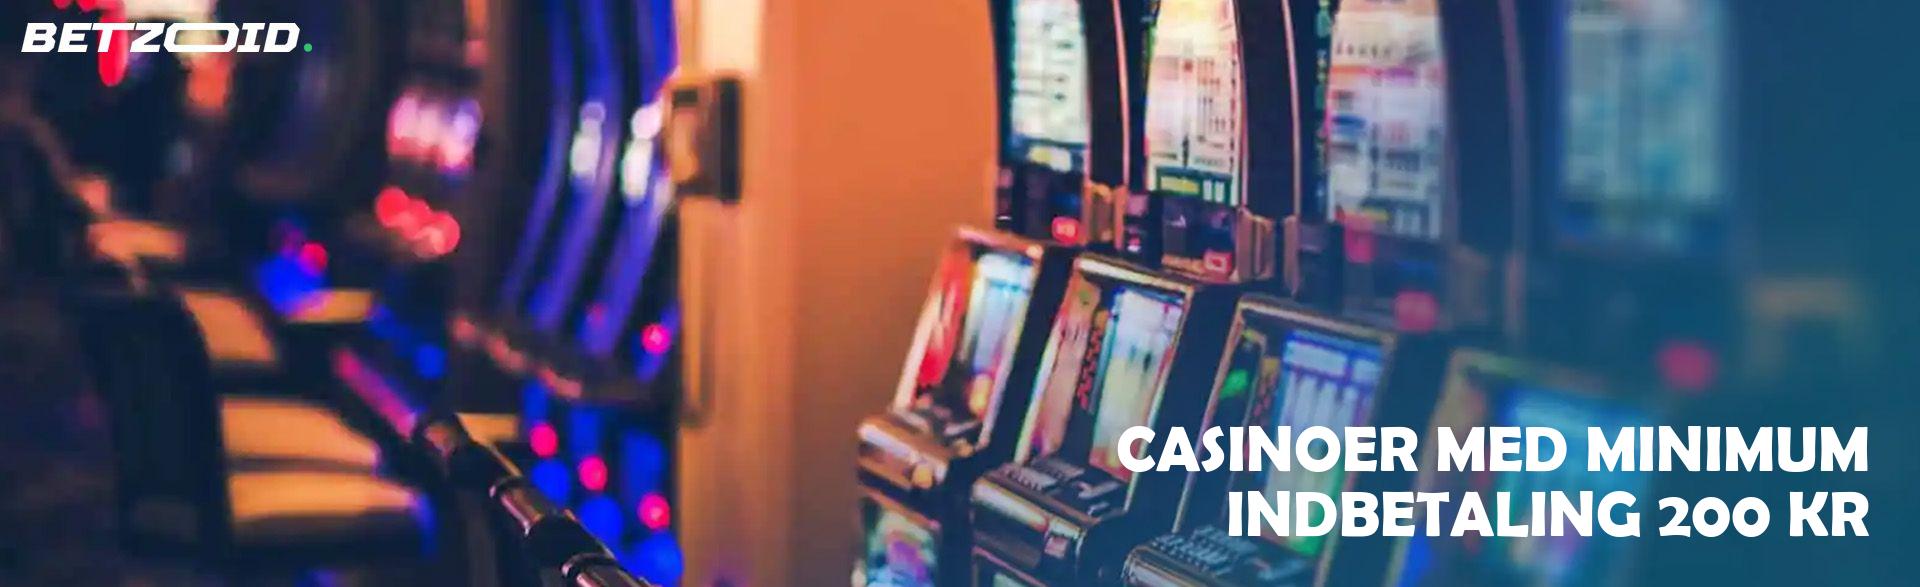 Casinoer Med Minimum Indbetaling 200 Kr.